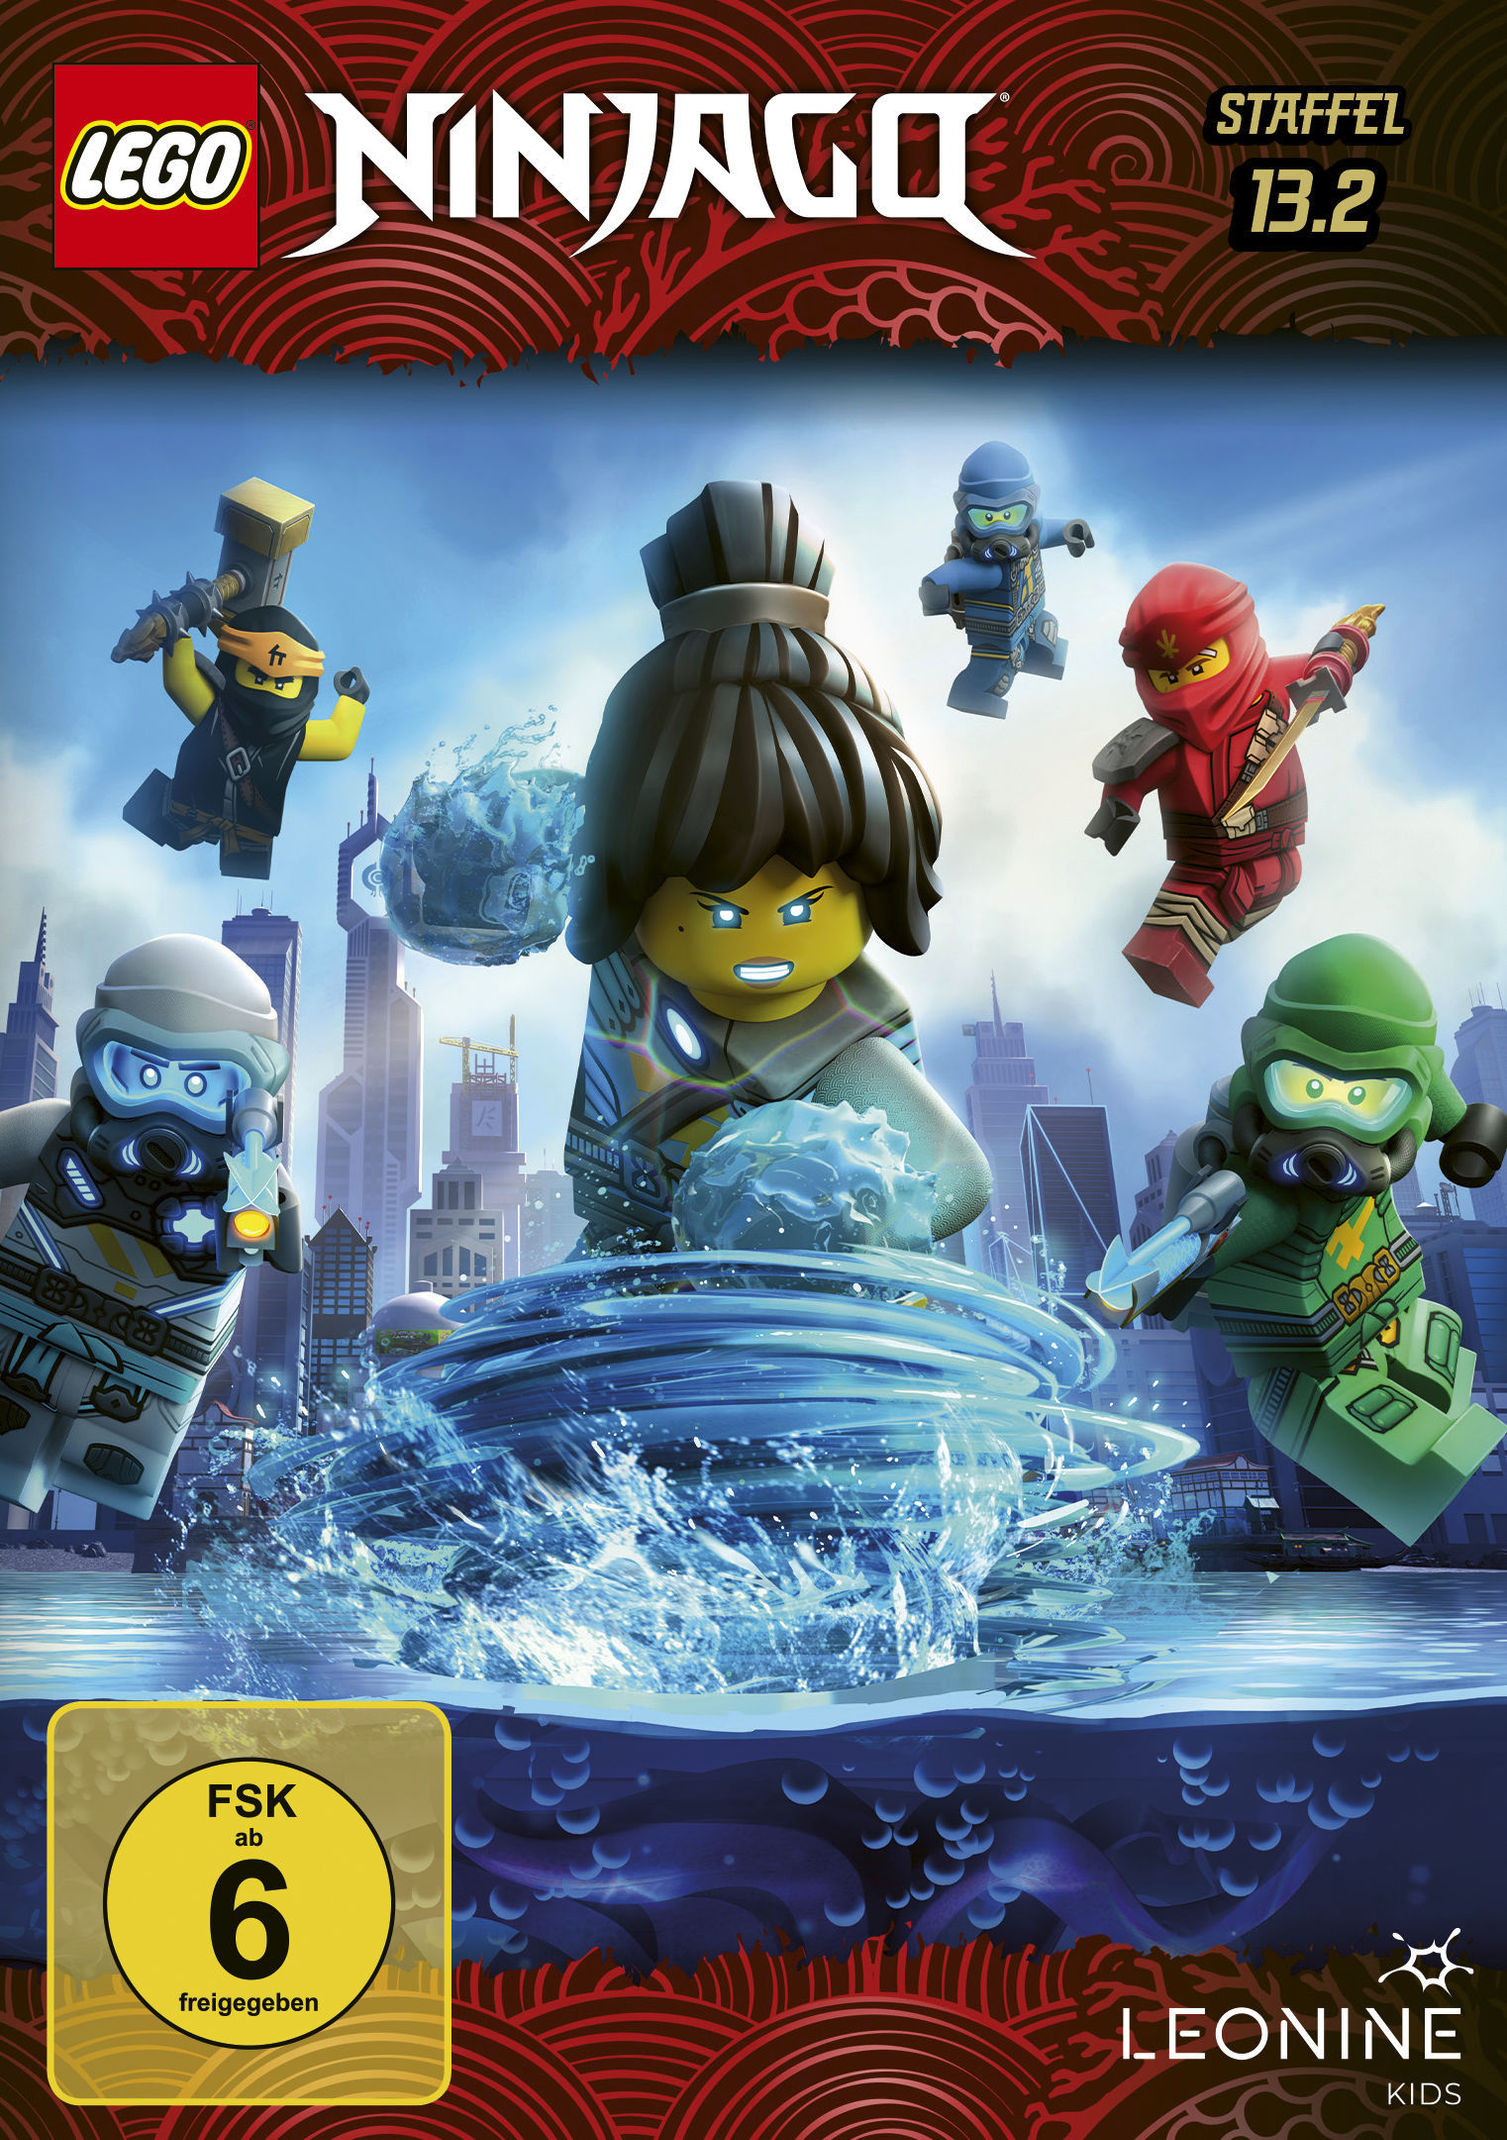 Lego Ninjago - Staffel 13.2 DVD bei Weltbild.de bestellen